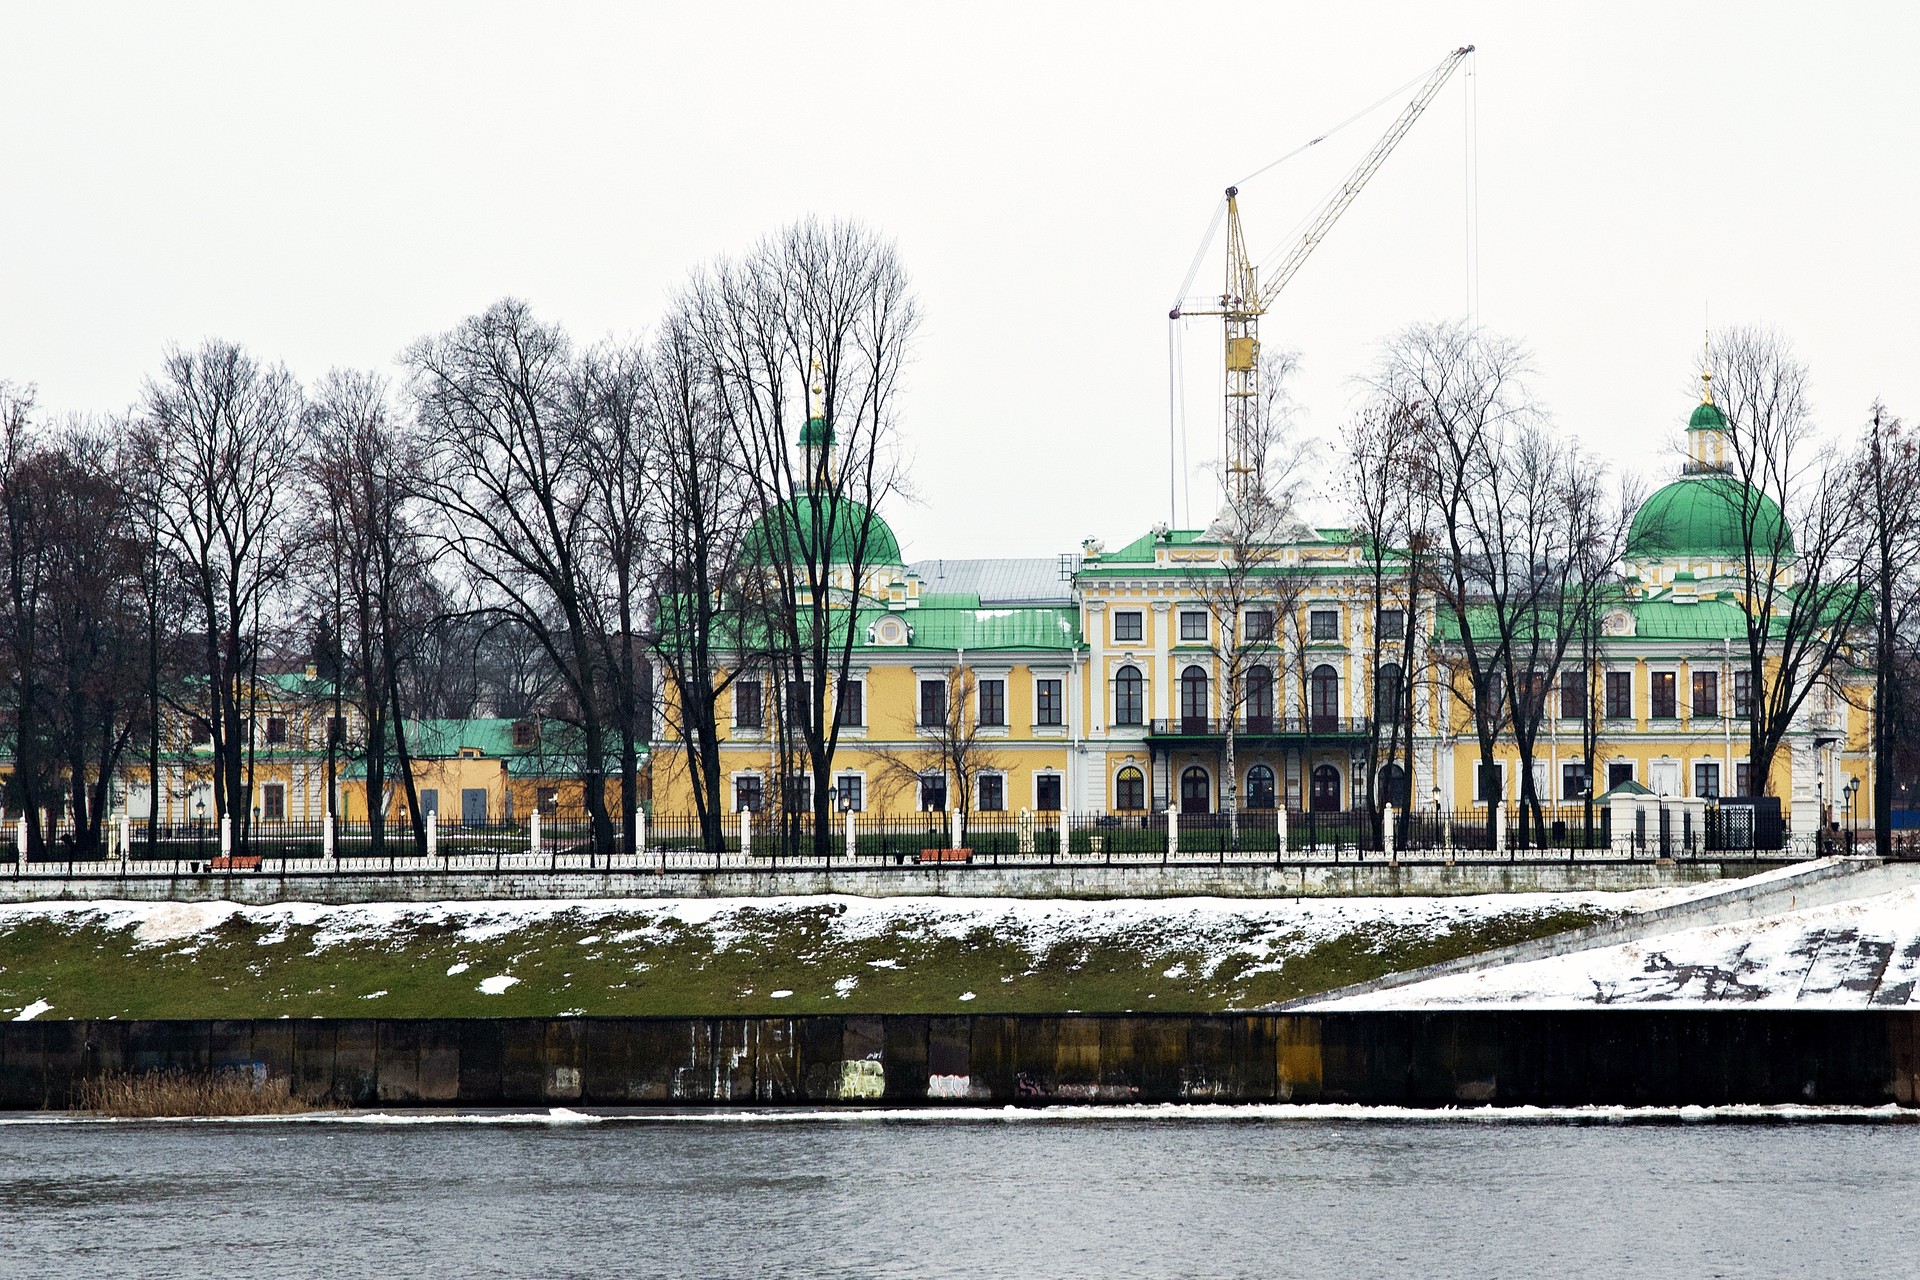 Wenn Sie dann über die Alte Stadtbrücke ans gegenüberliegende Wolgaufer spazieren, sehen Sie den kompletten Palast mit seinem Park. Der Kran im Hintergrund gehört zu den Bauarbeiten an einer Kirche direkt vor dem Palast. Diese war zu Zeiten Stalins gesprengt worden und wird nun wieder aufgebaut.